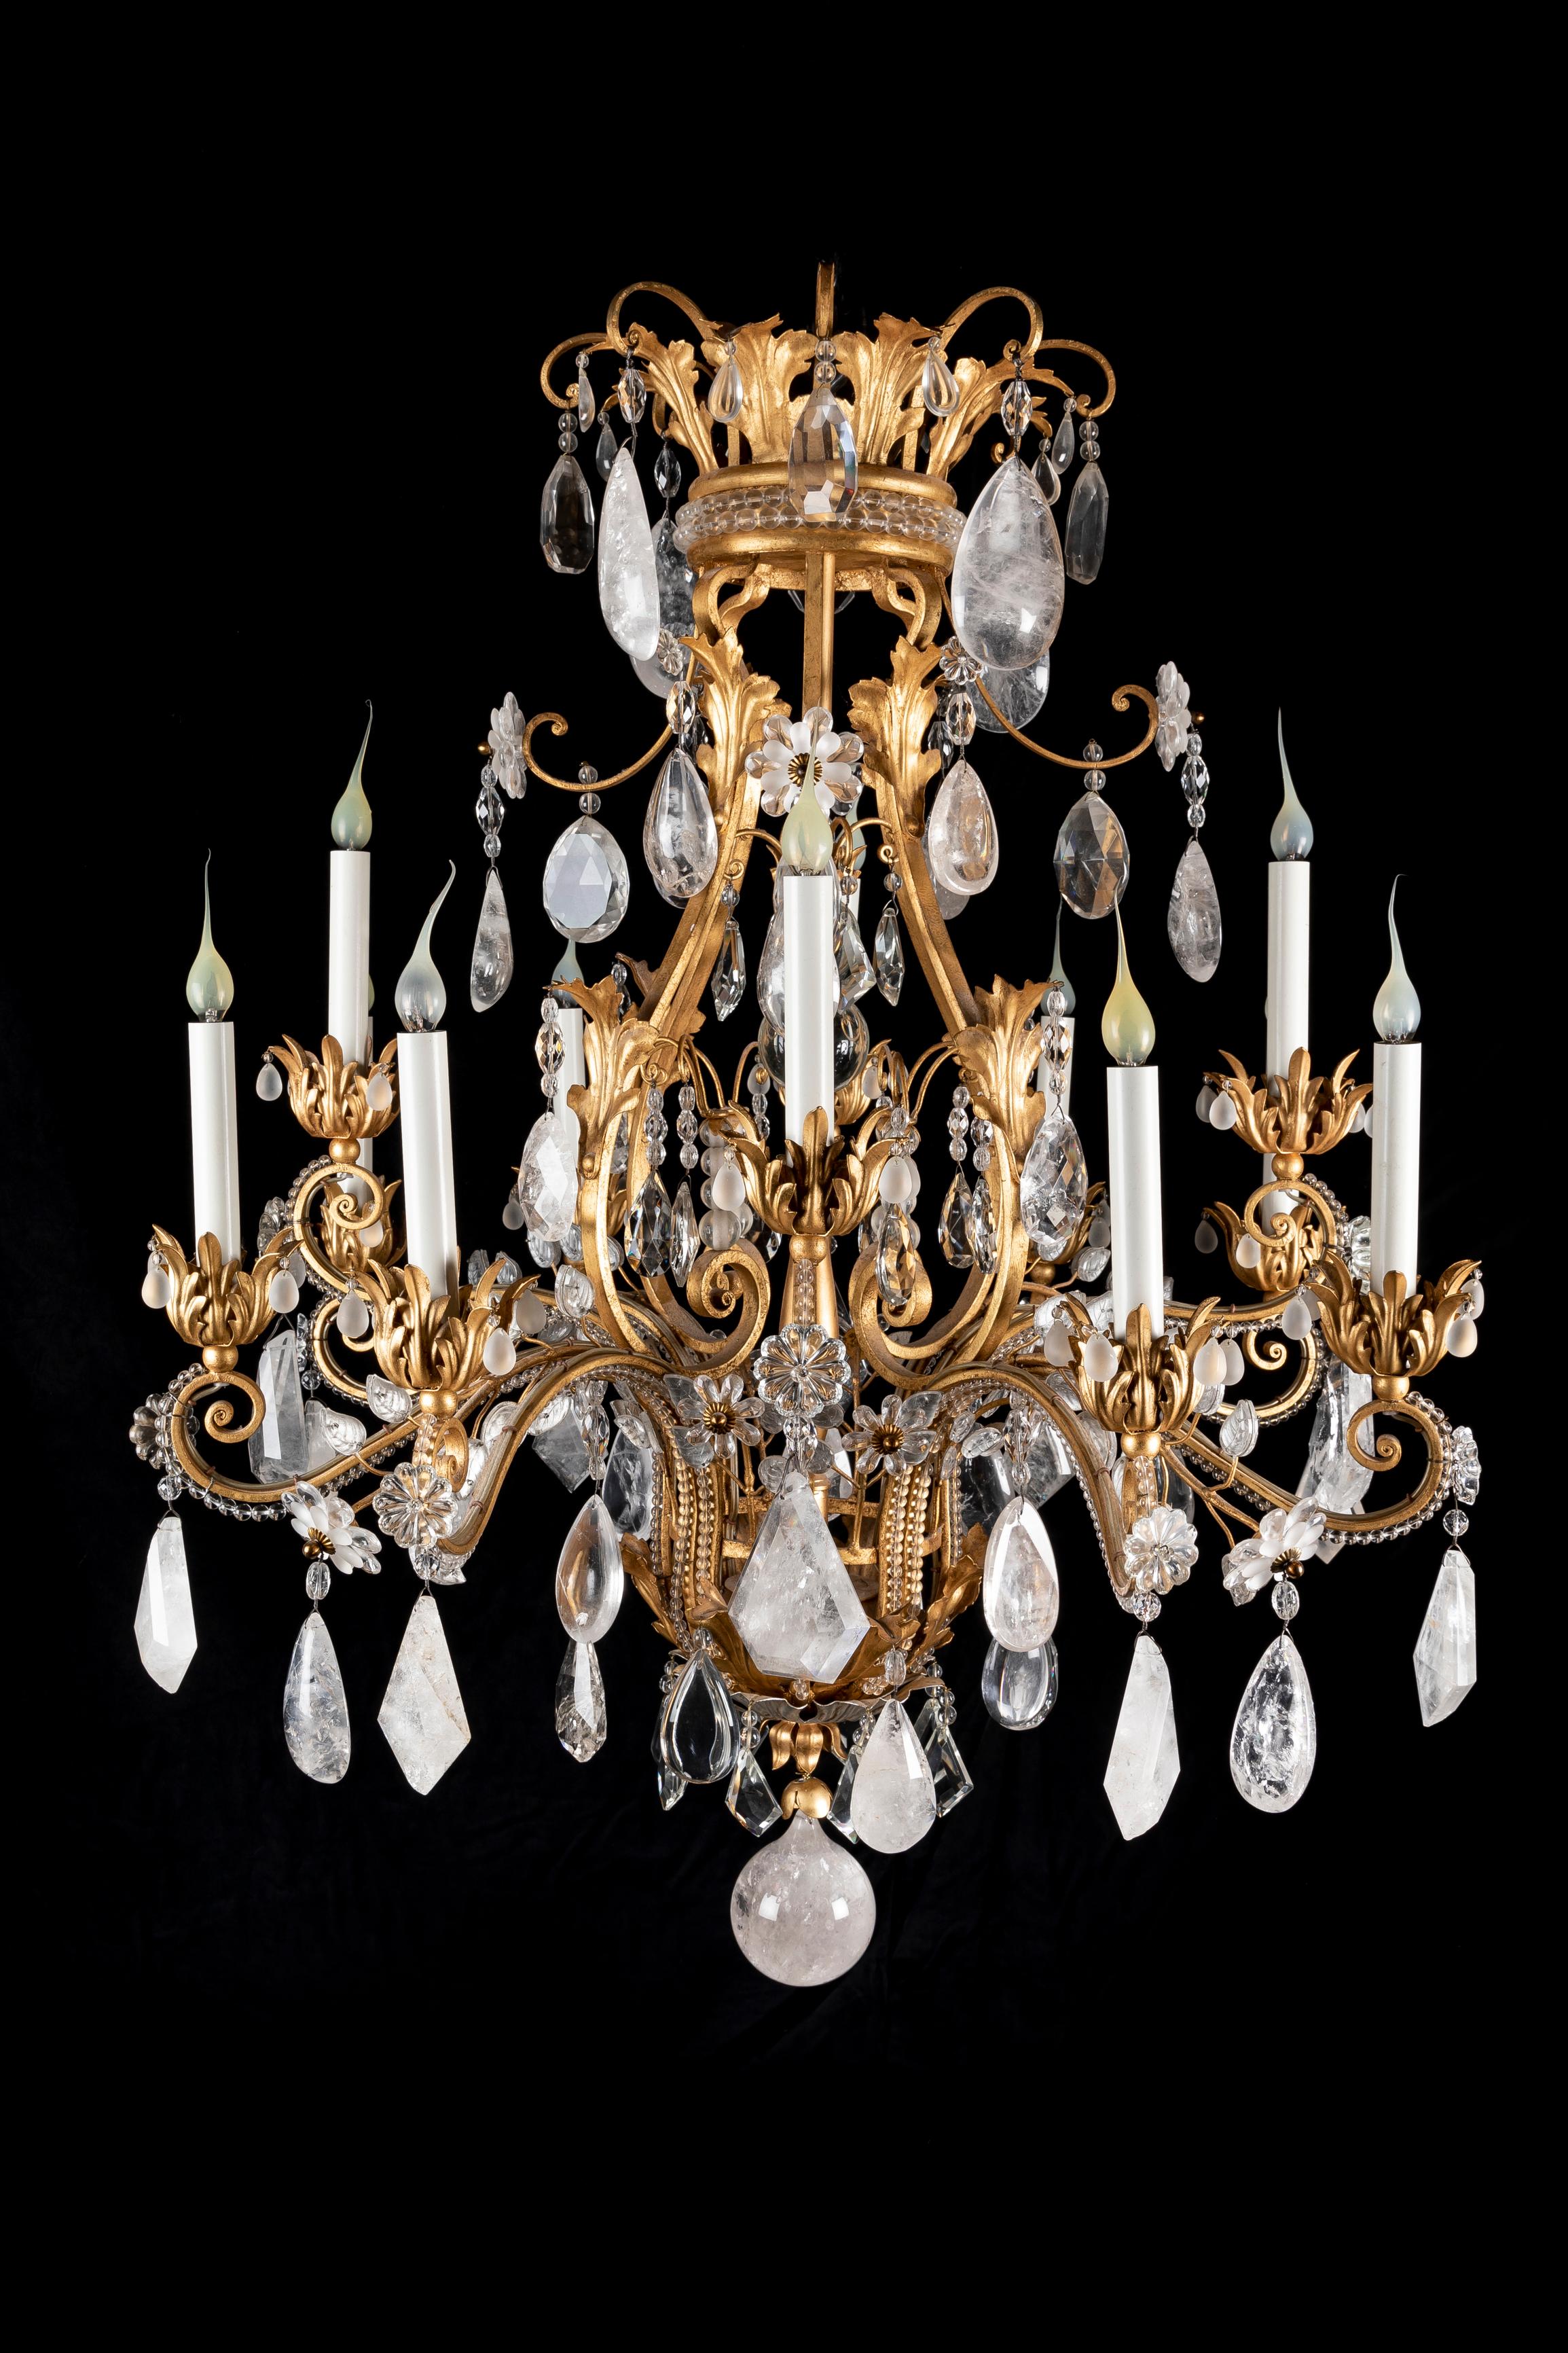 Grand lustre de style Louis XVI en cristal de roche taillé, doré et argenté et en cristal à trois niveaux de lumière, aux détails exquis, à la manière de la Maison Bagues. Ce lustre inhabituel en forme de cage est orné de grands prismes en cristal